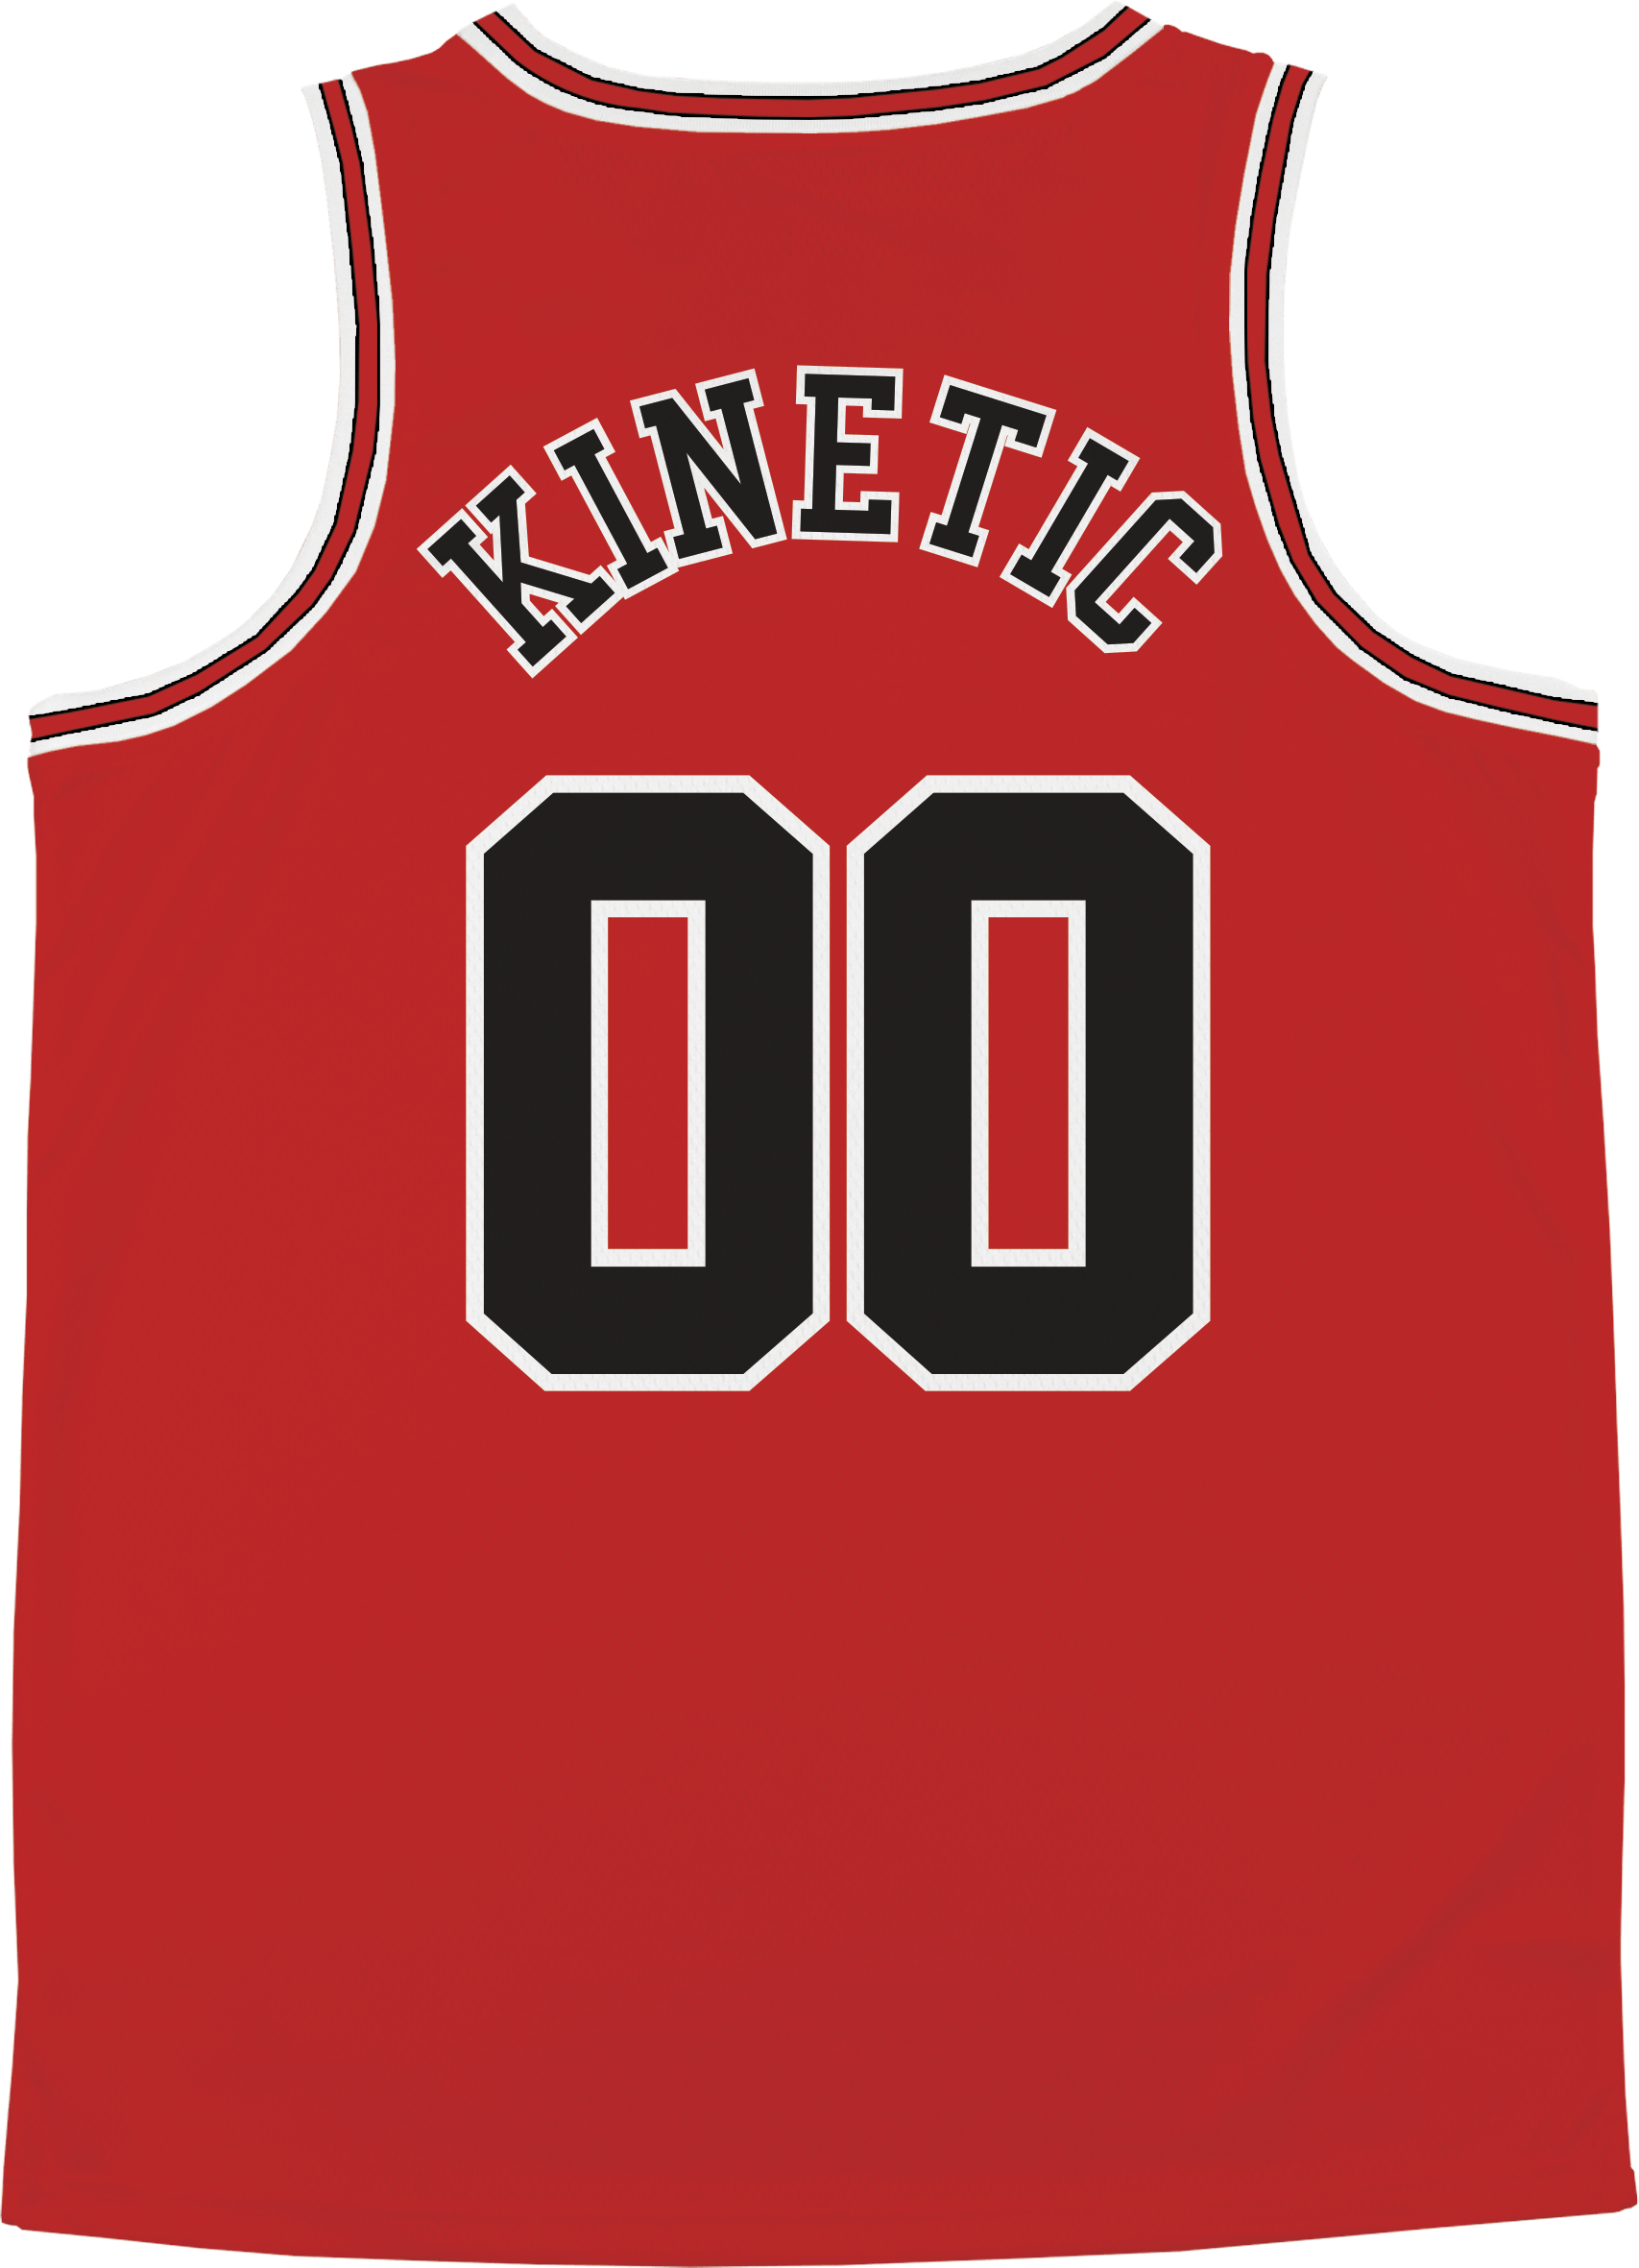 Phi Kappa Psi - Big Red Basketball Jersey Premium Basketball Kinetic Society LLC 